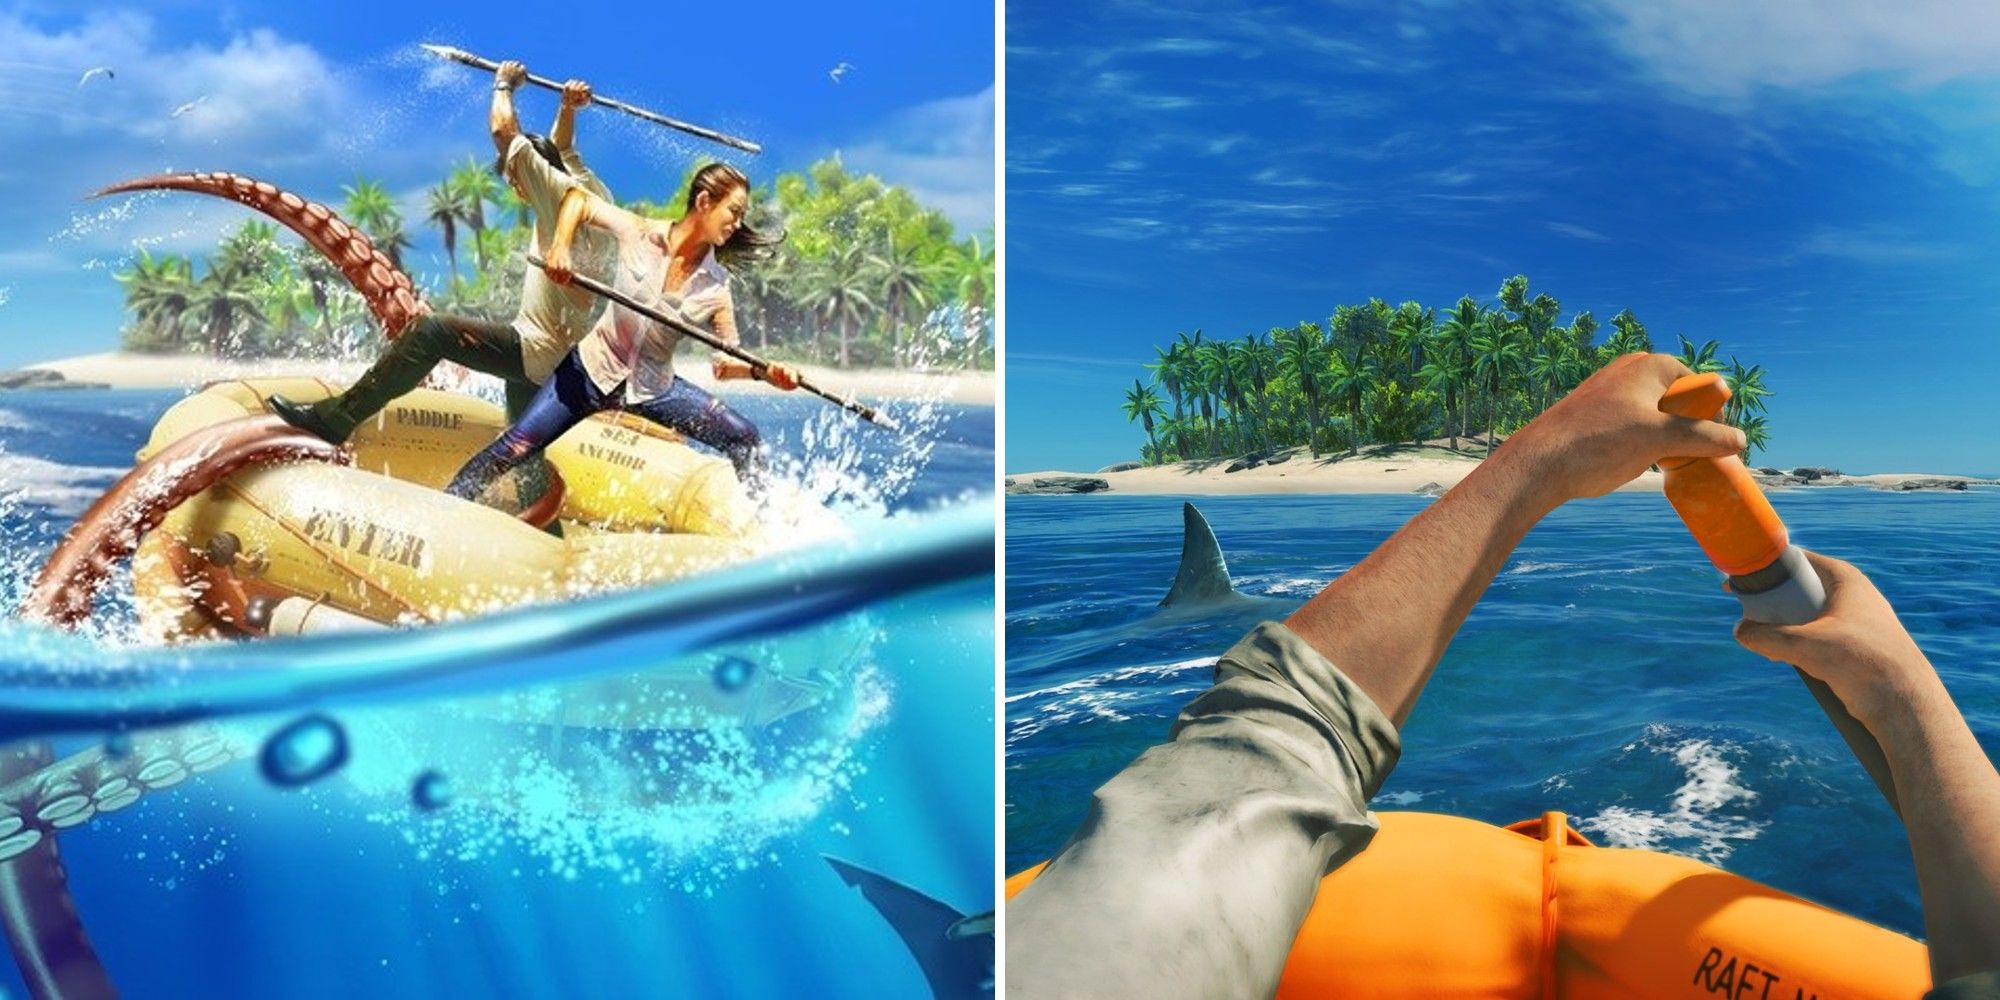 Stranded Deep: Die besten Tipps & Tricks für PS4 & Xbox One